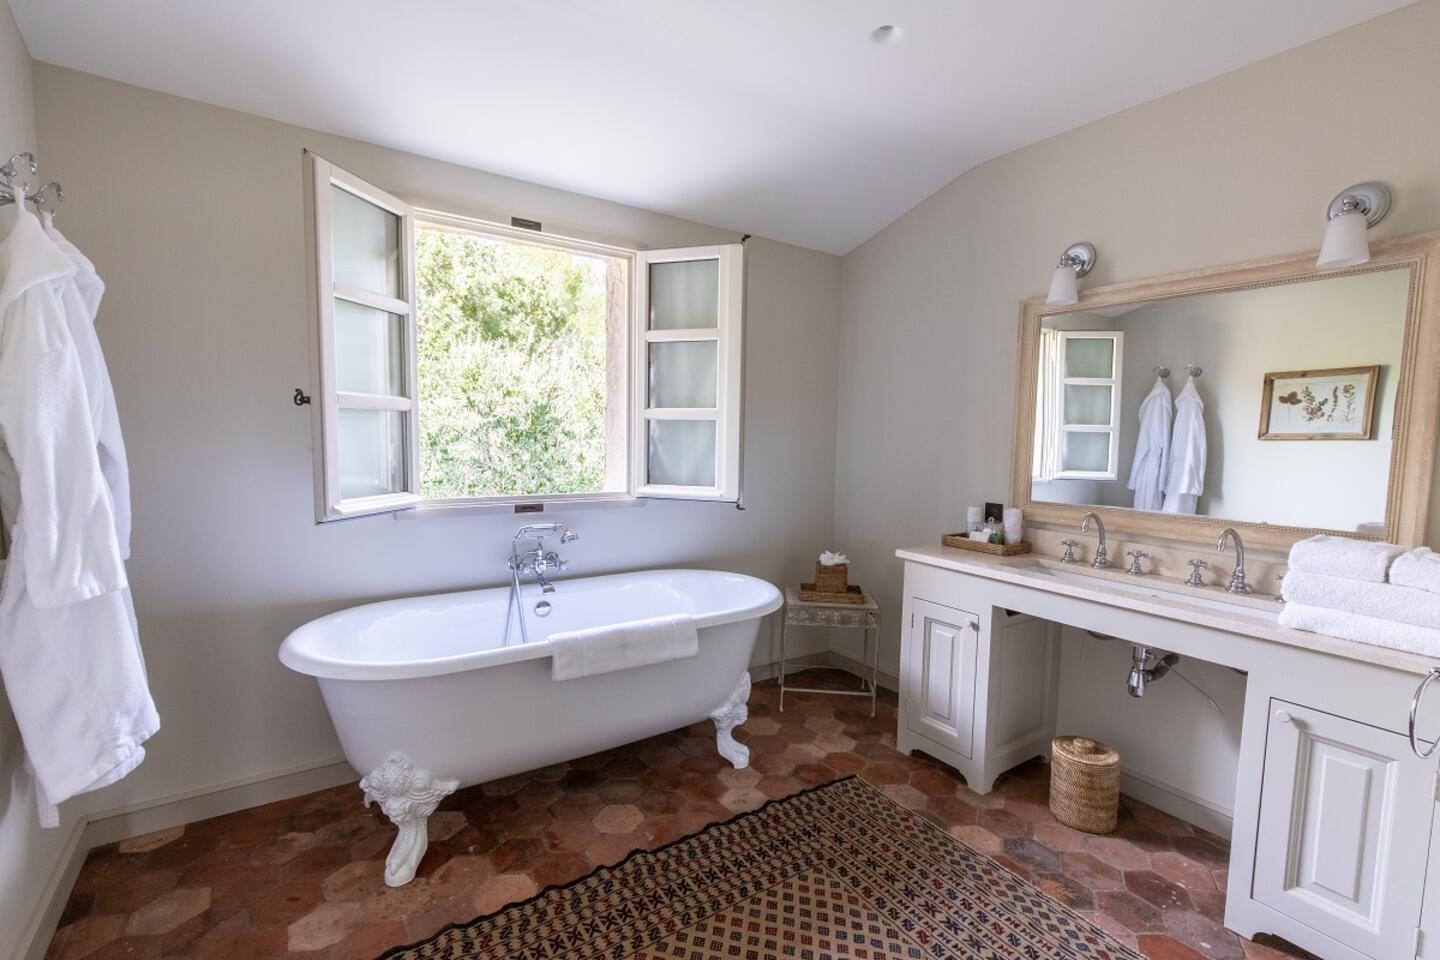 28 - Villa en Provence: Villa: Bathroom